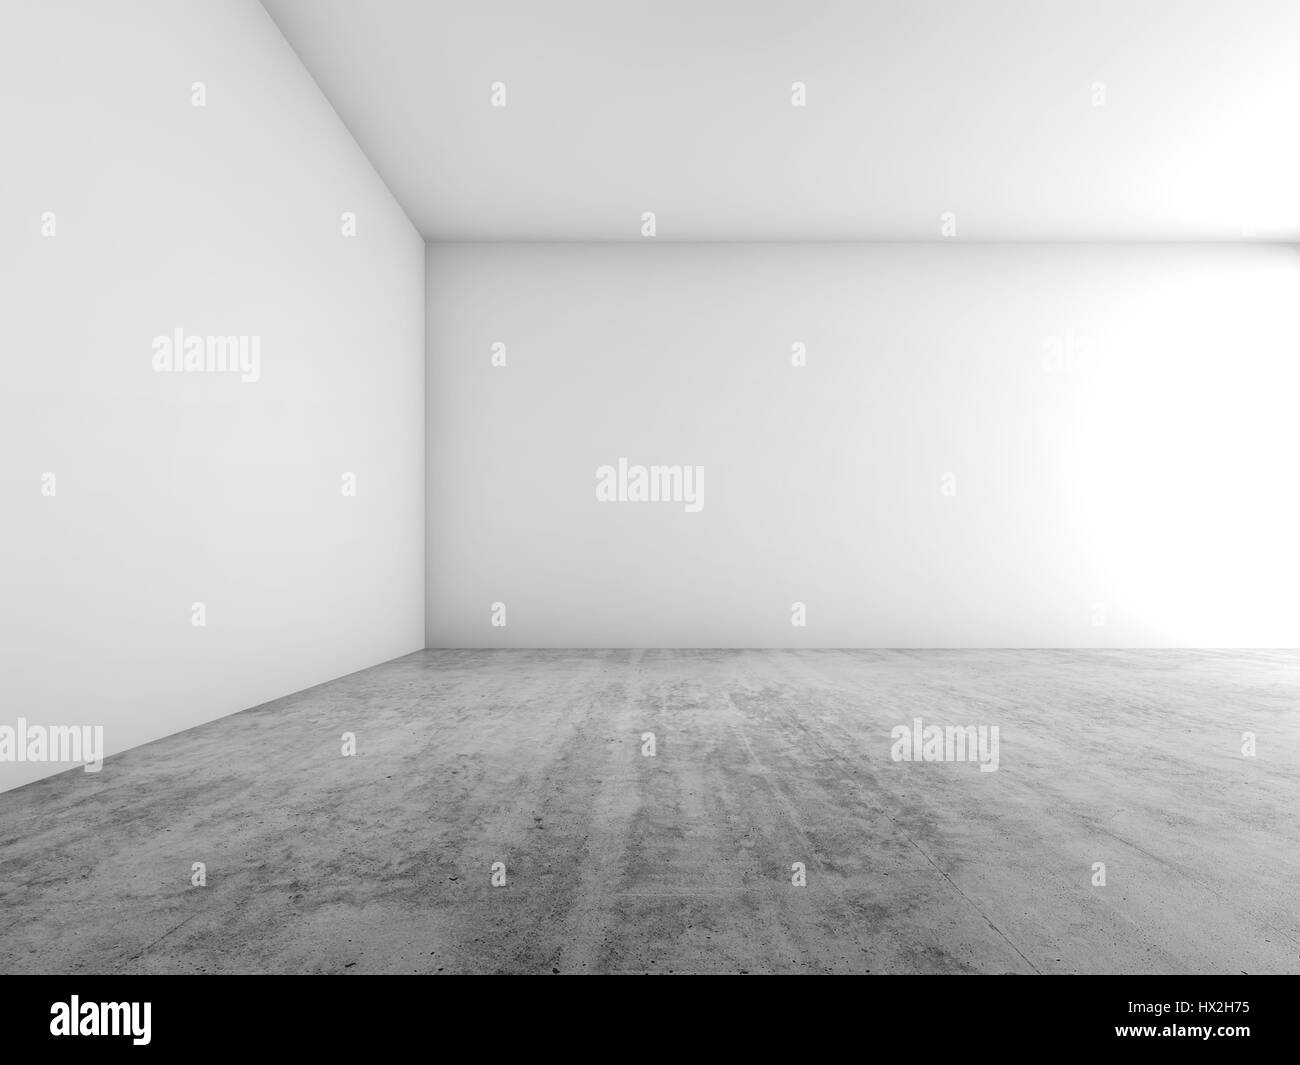 Abstrakte leeren Innenraum Hintergrund, weiße Wände und Betonboden, zeitgenössische Architekturdesign. 3D illustration Stockfoto